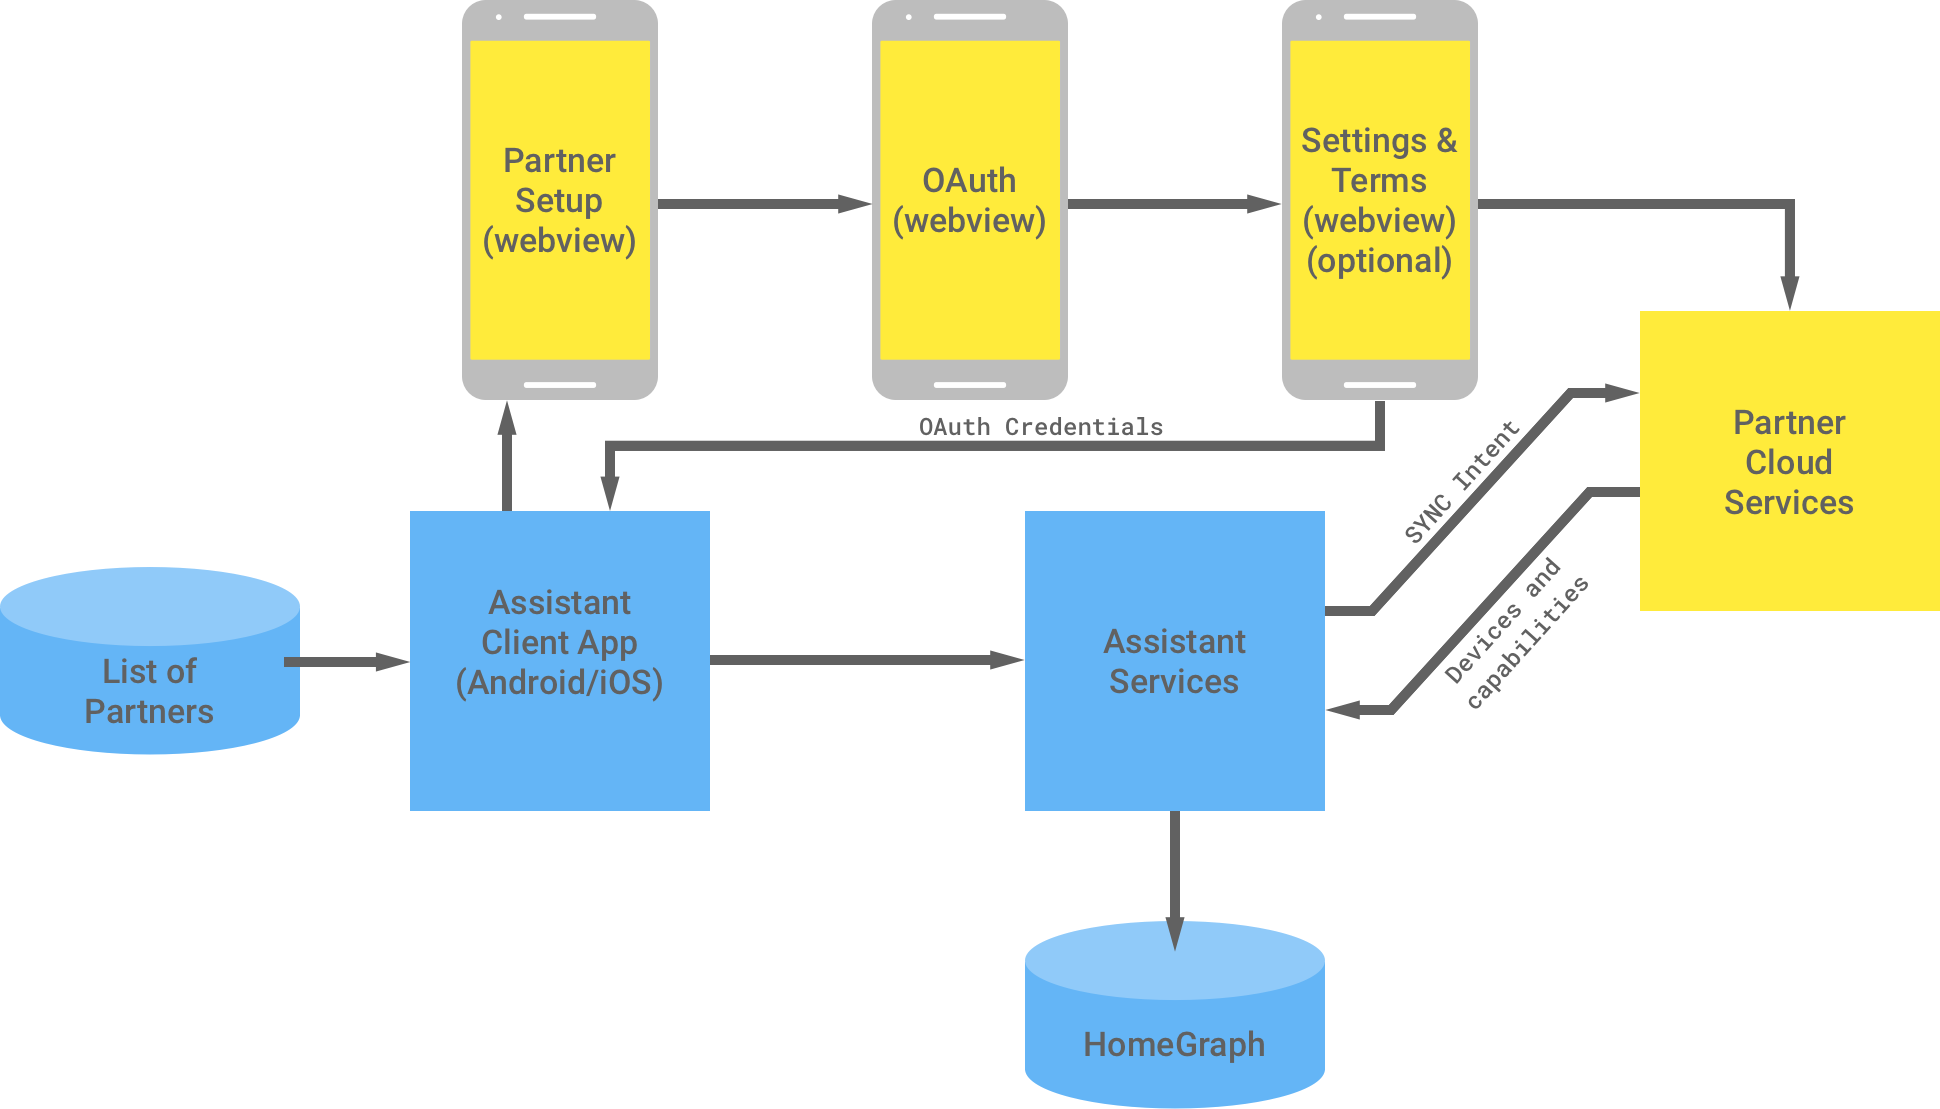 Diese Abbildung zeigt die Interaktion zwischen der Google-Infrastruktur und der Partnerinfrastruktur. Aus der Google-Infrastruktur steht der Assistant-Clientanwendung eine Liste von Partnern zur Verfügung, die dann zur Partnerinfrastruktur für die OAuth-Authentifizierung fließt. Die OAuth-Authentifizierung auf Partnerseite umfasst die WebView für die Partnereinrichtung, OAuth-WebView, optionale Einstellungen und Nutzungsbedingungen sowie Partner-Cloud-Dienste. Die Partnerinfrastruktur gibt dann die OAuth-Anmeldedaten an die Assistant-Client-App zurück. Die Partner-Cloud-Dienste senden die verfügbaren Geräte und Funktionen an die Assistant-Dienste, die die Informationen dann in Home Graph speichern.